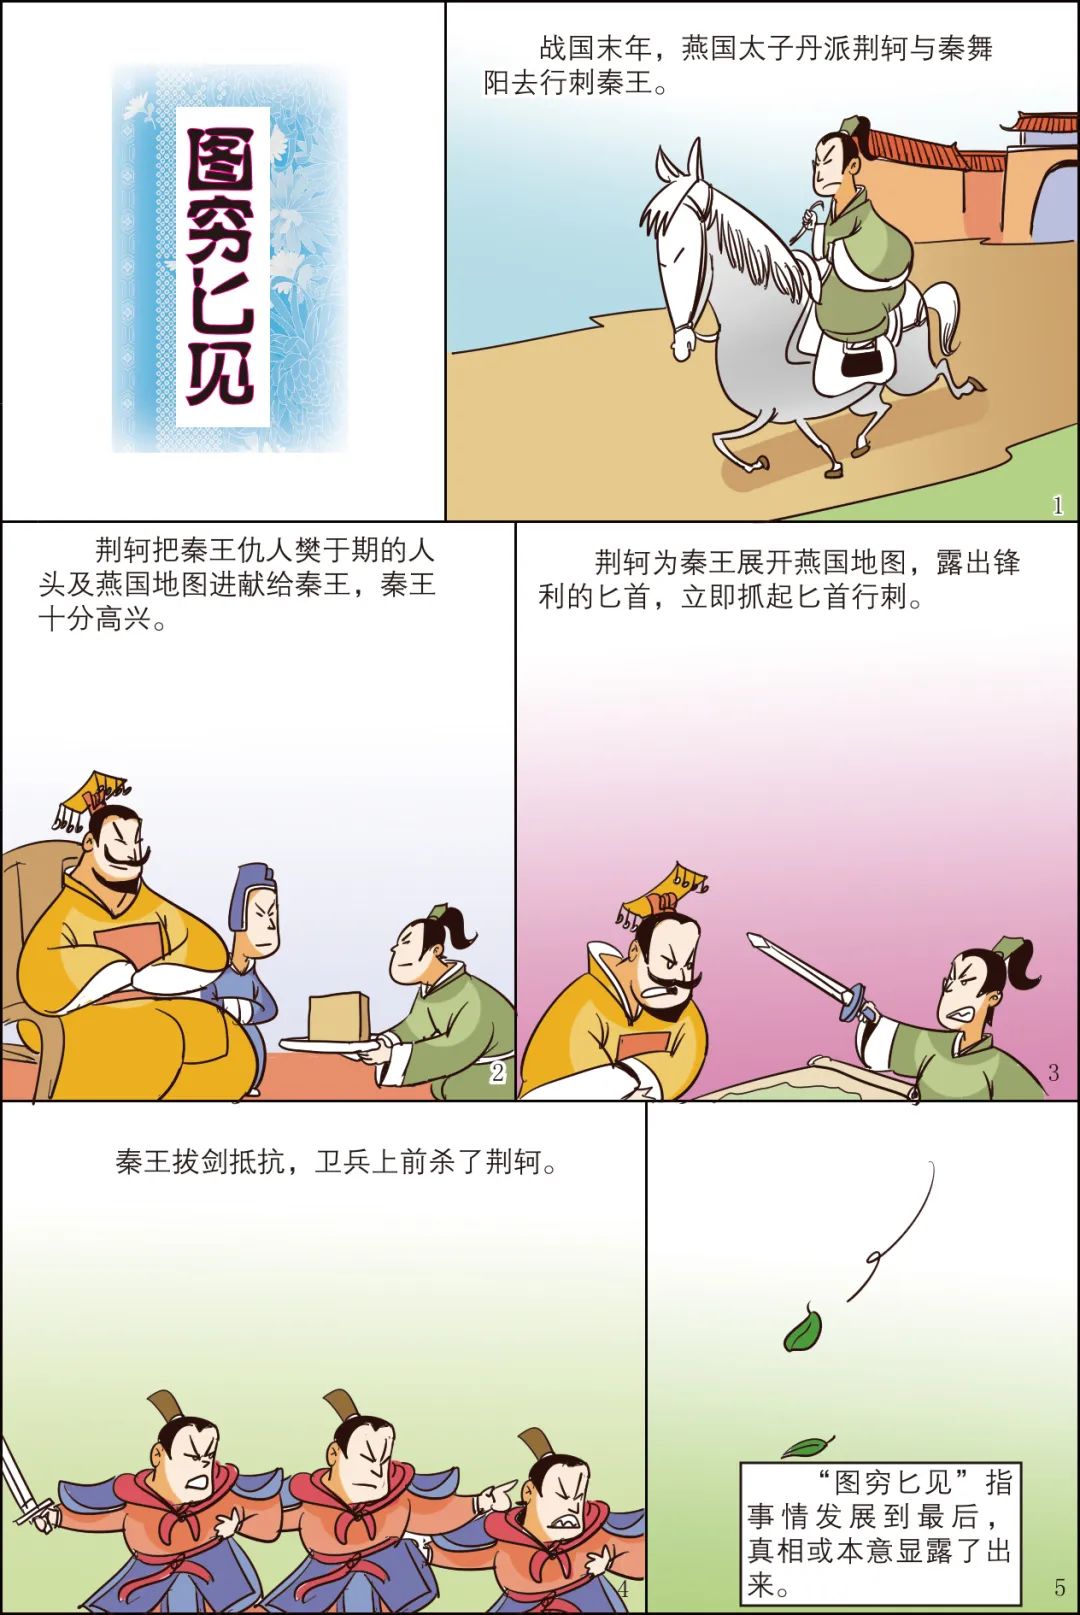 「漫画中国成语」图穷匕见